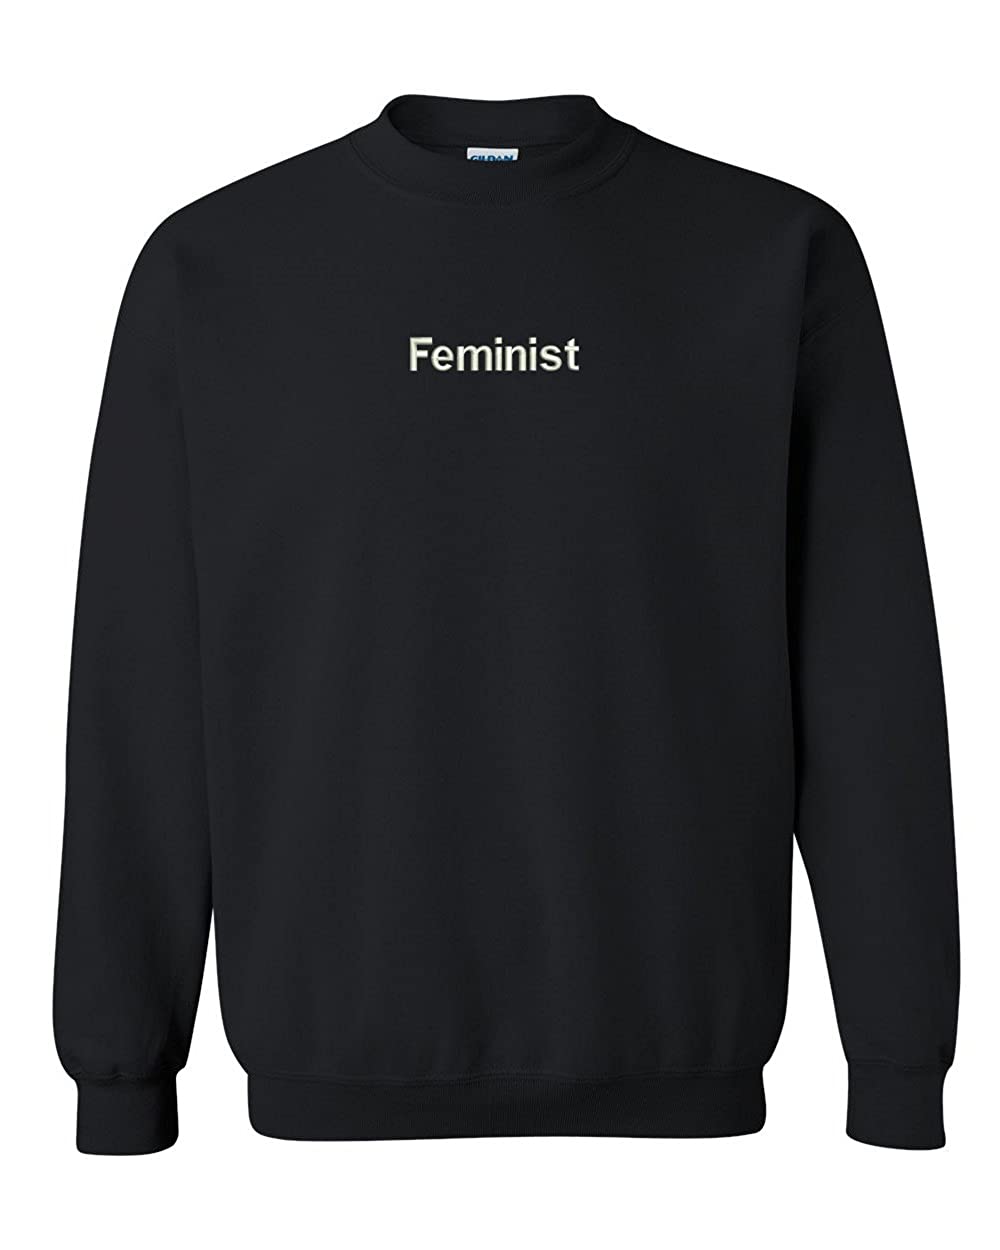 Trendy Apparel Shop Feminist AF Embroidered Crewneck Sweatshirt - Black - S